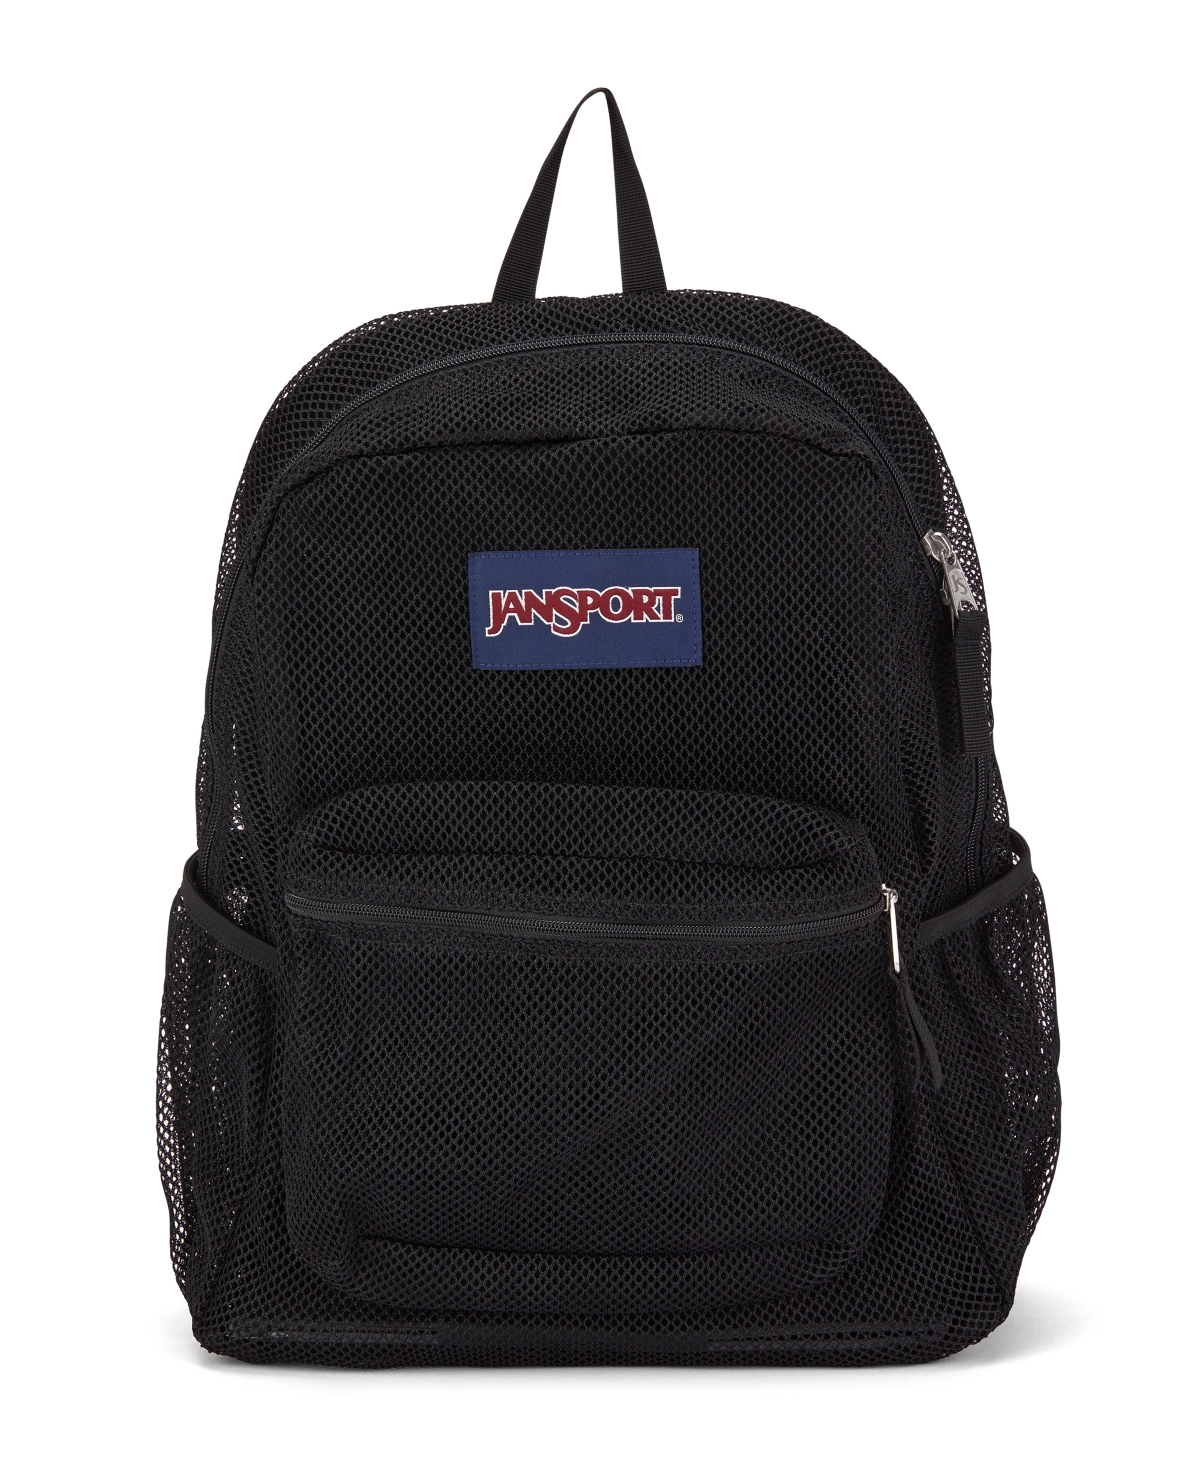 Jansport Eco Mesh Backpack In Black